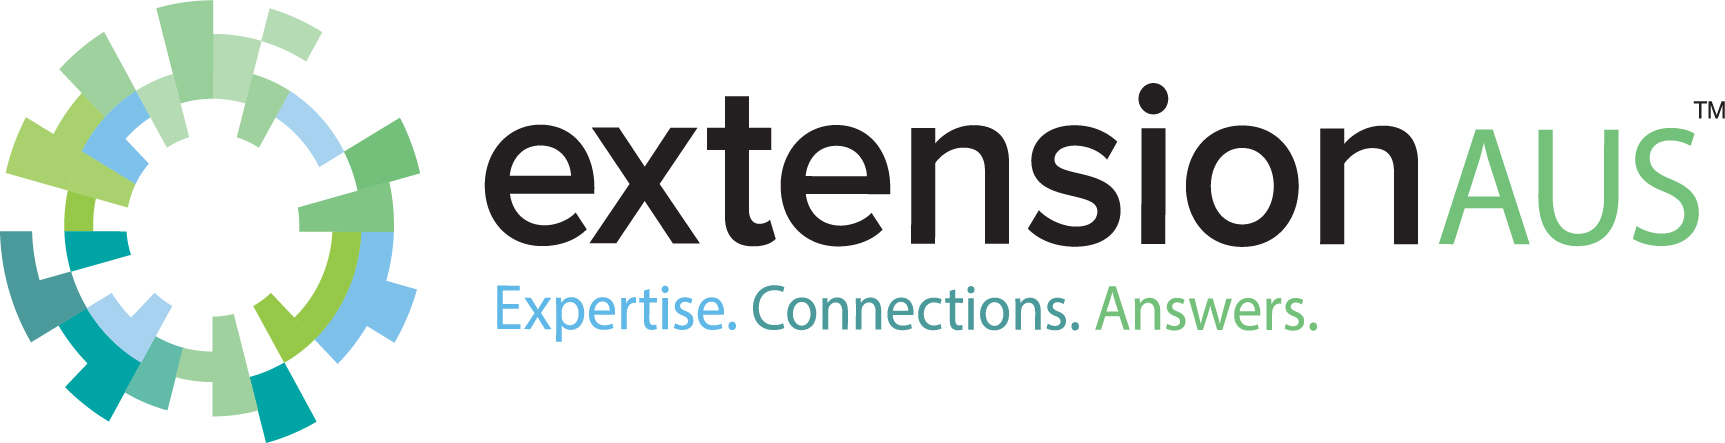 extensionaus logo